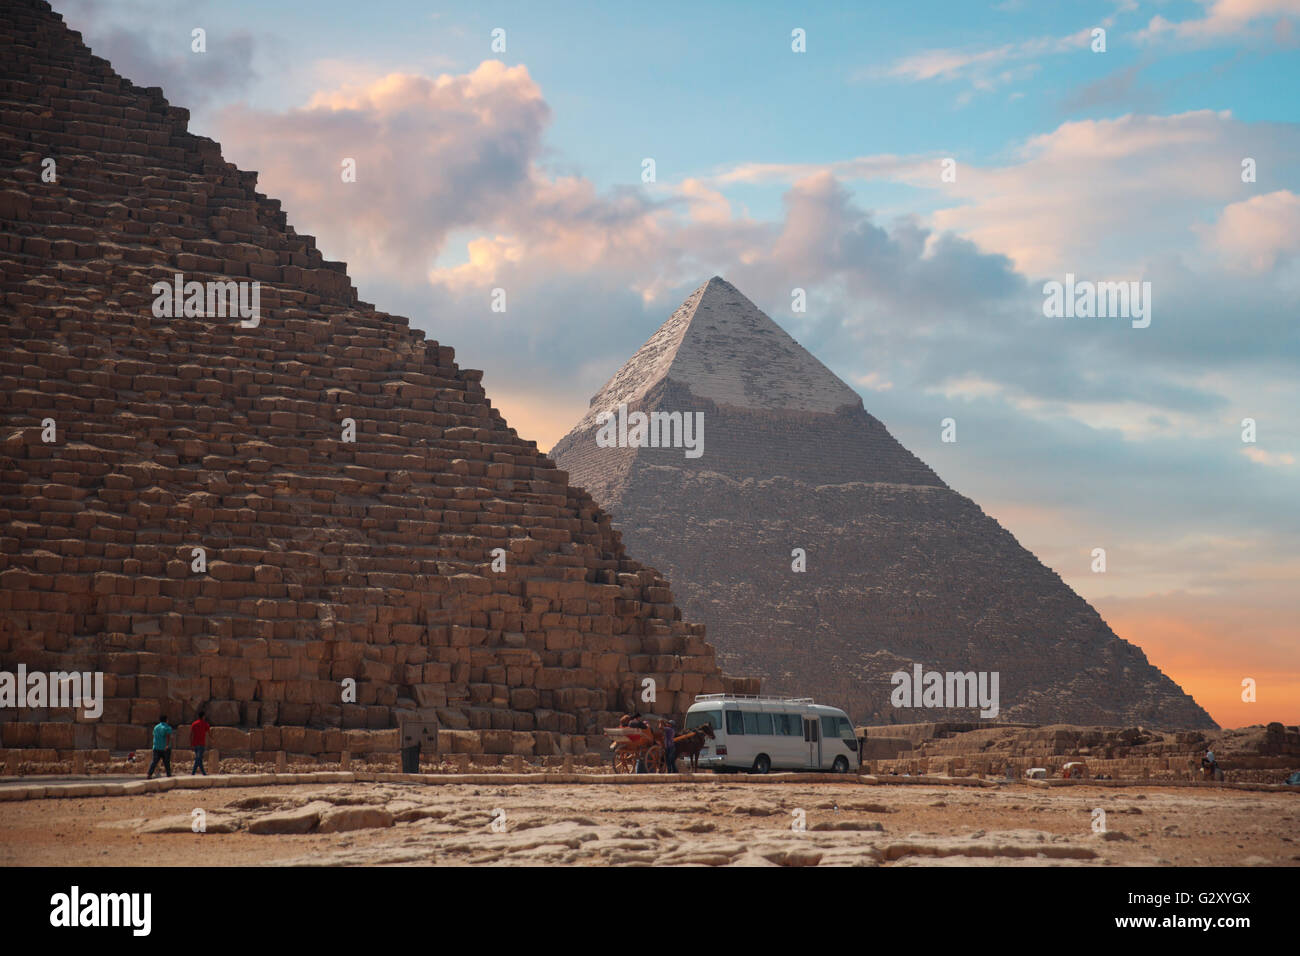 Immagine delle grandi piramidi di Giza in Egitto. Foto Stock